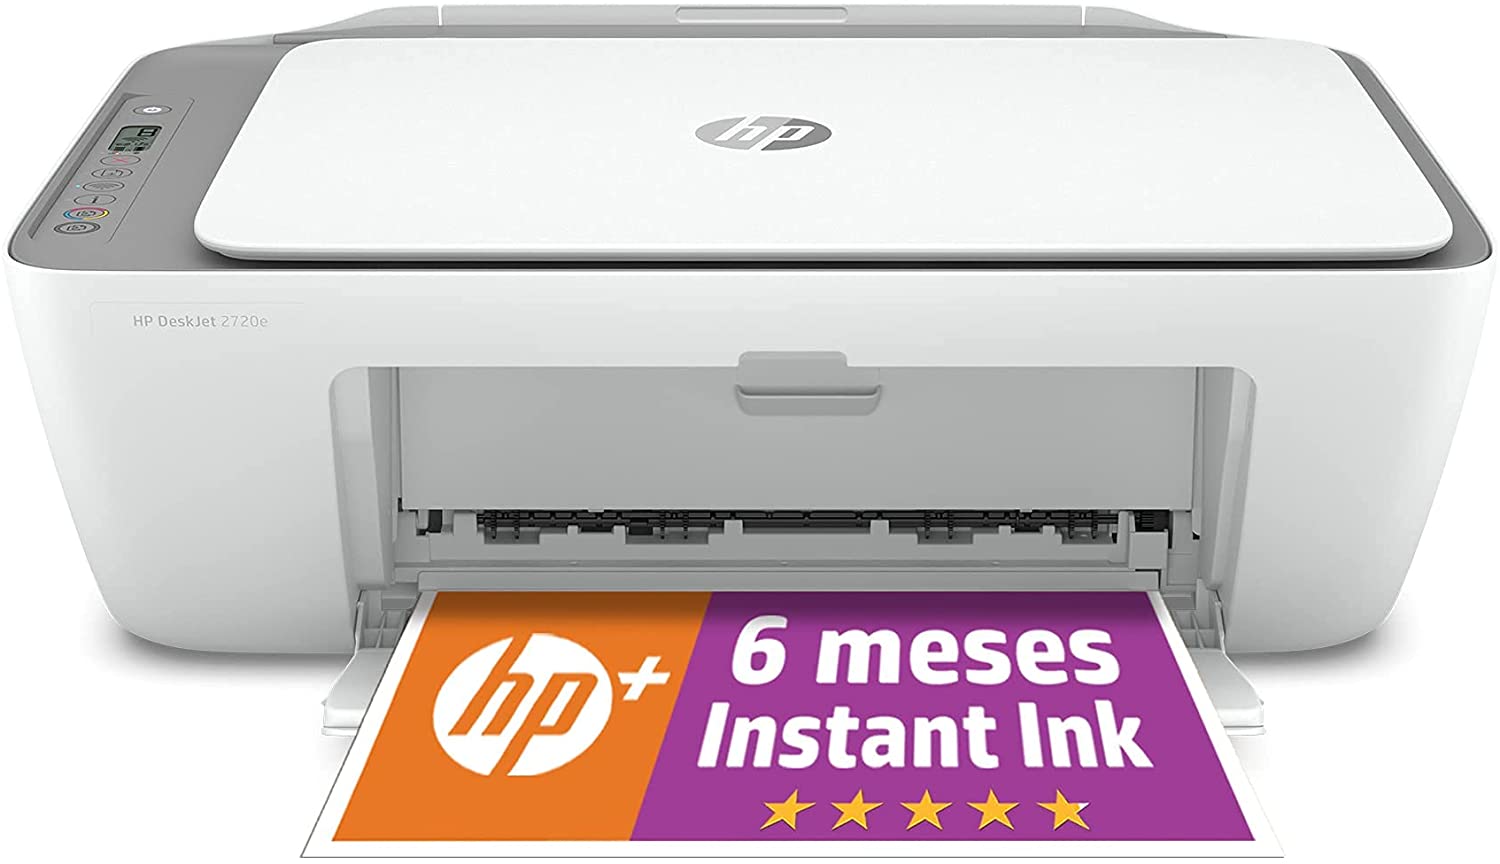 Multifunktionsdrucker HP 2720e Wifi/White Fax Deskjet